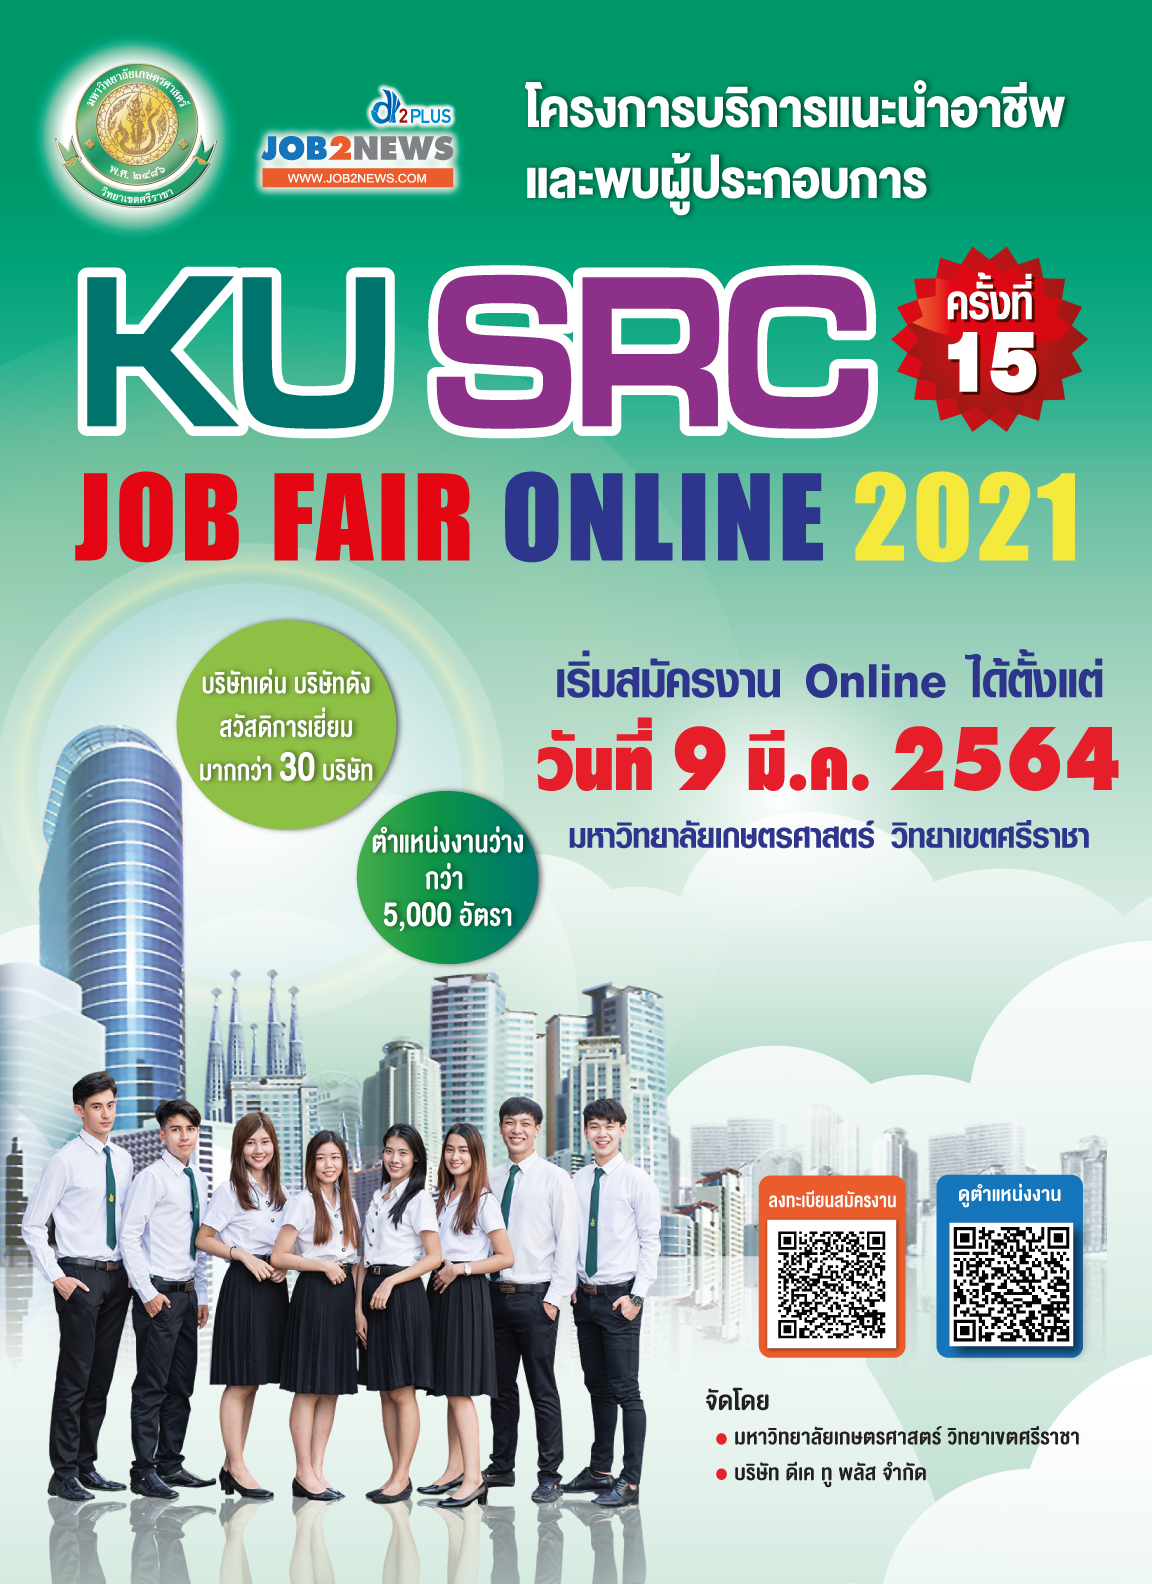 KU SRC Job Fair Online 2021